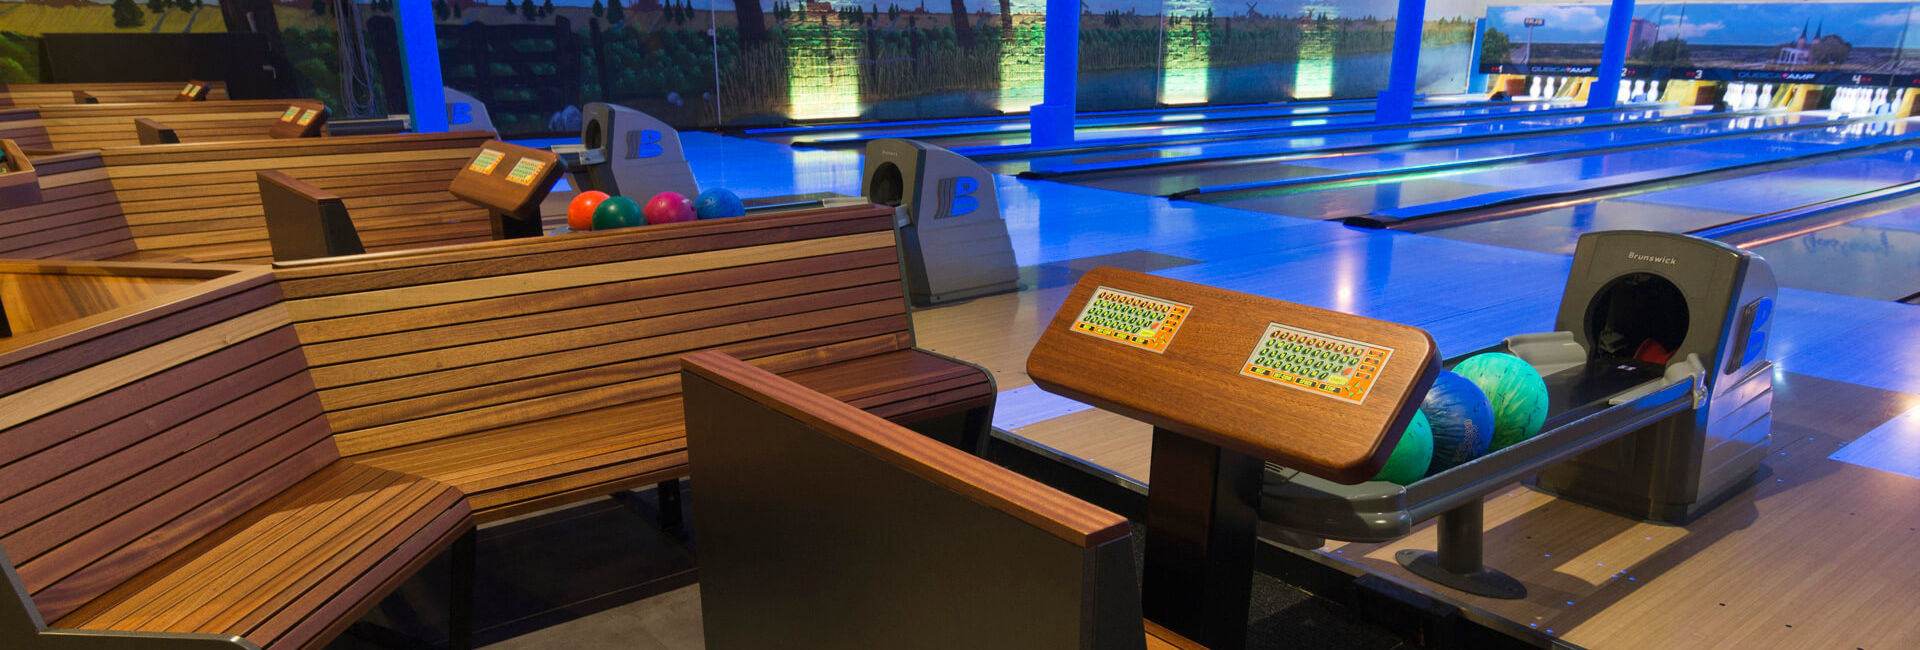 Zitjes en de bowlingbanen - Privacy verklaring